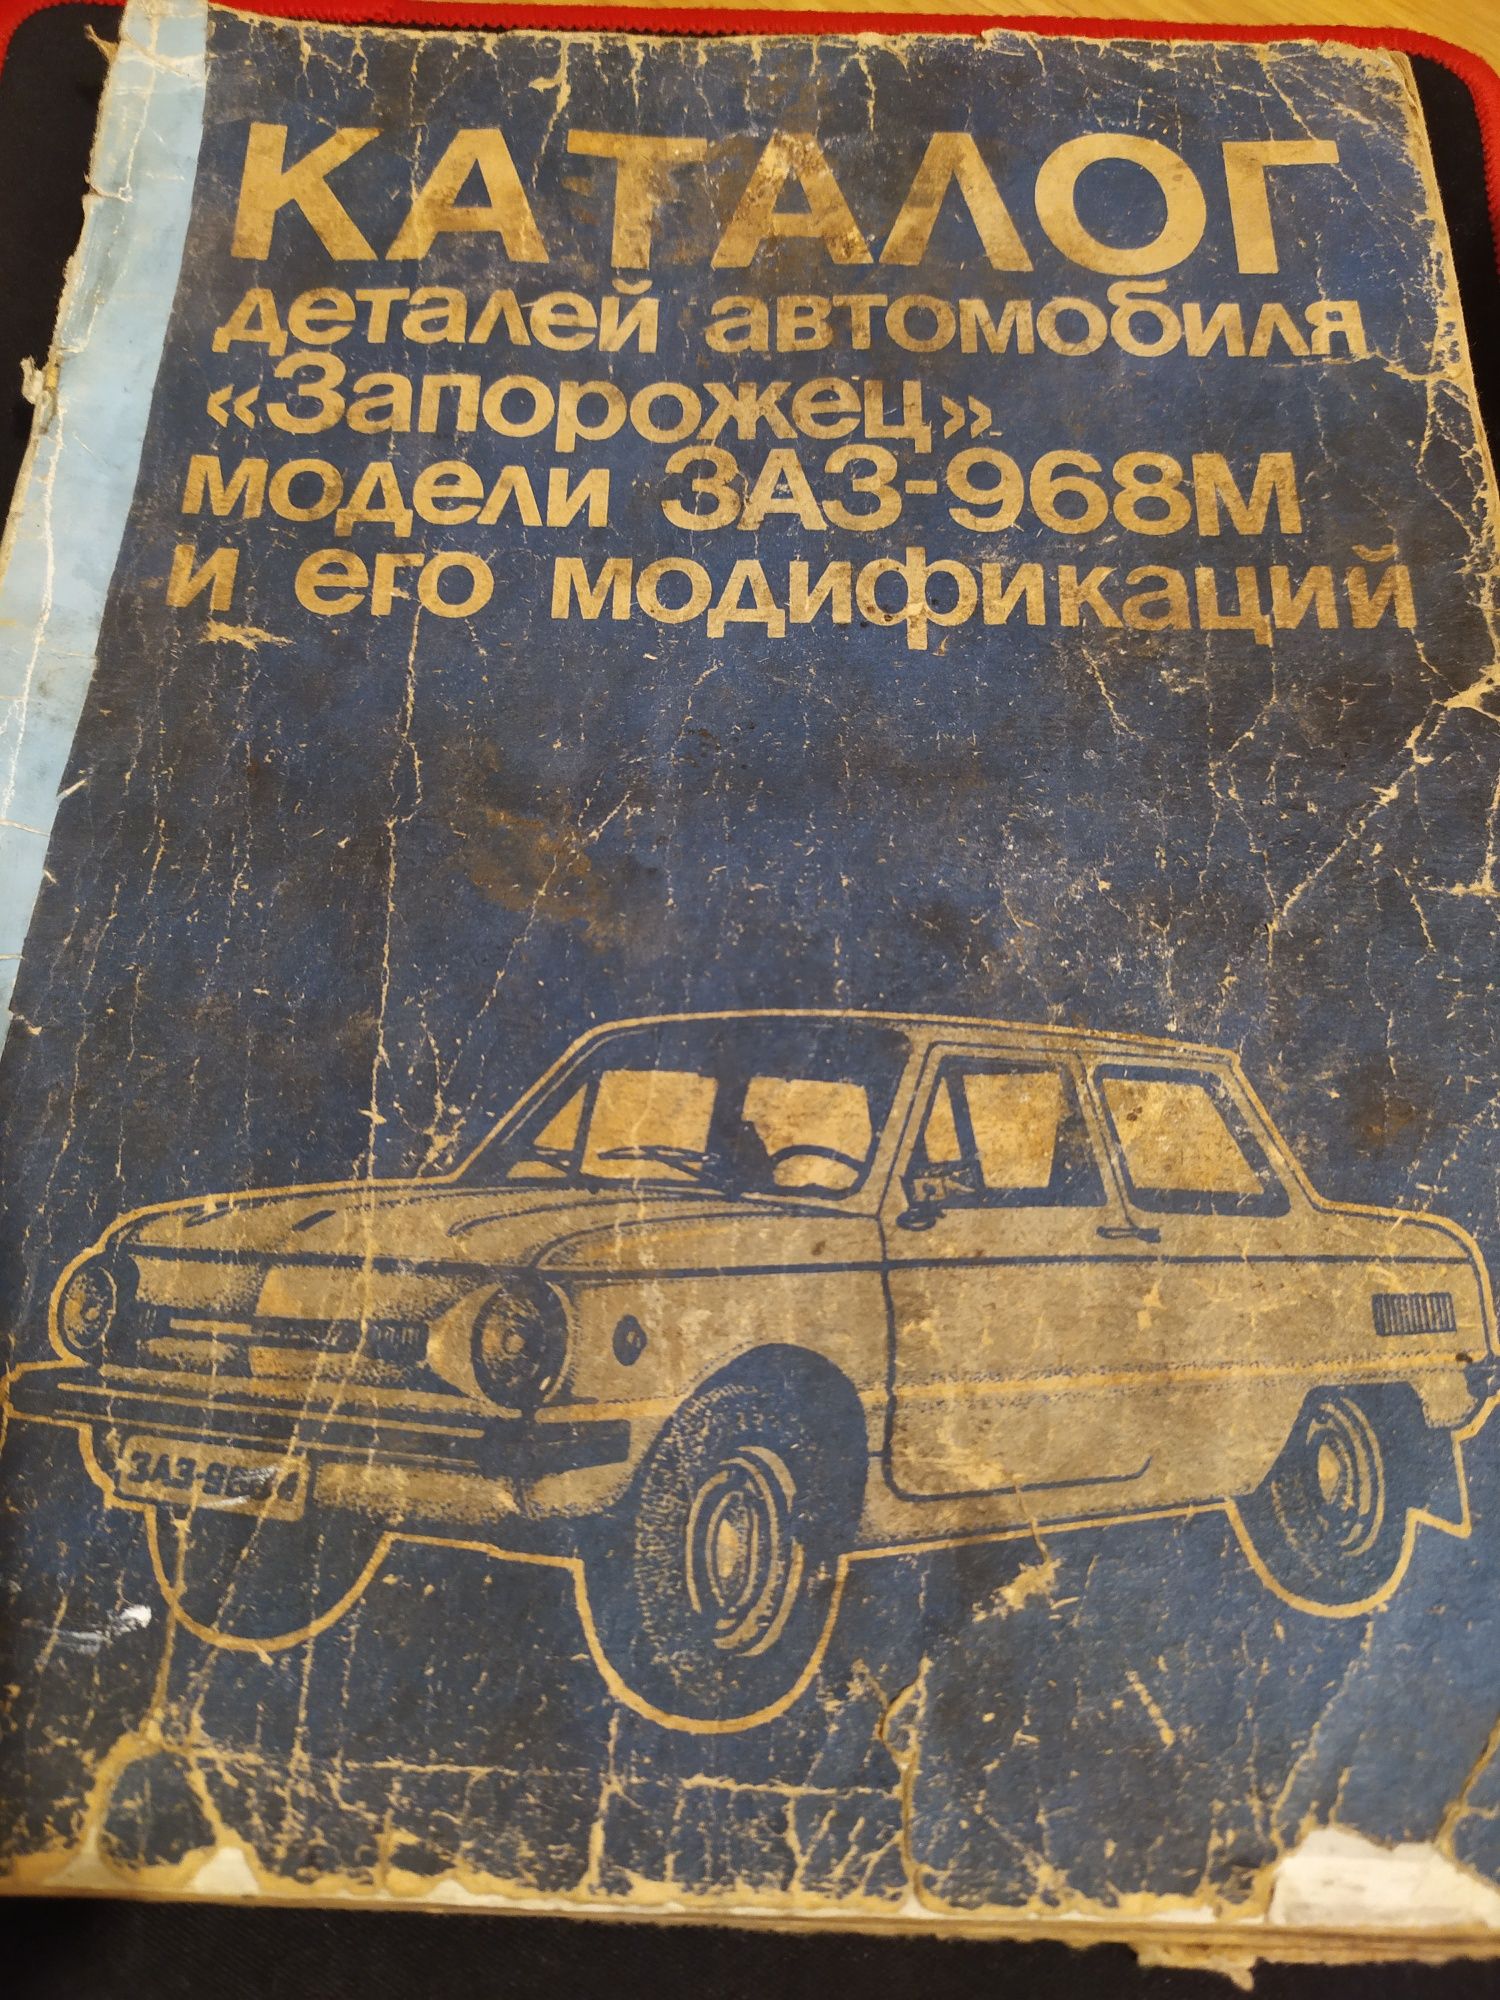 Книга " Каталог деталей автомобіля" Запорожець " моделі ЗАЗ-968М і т.д